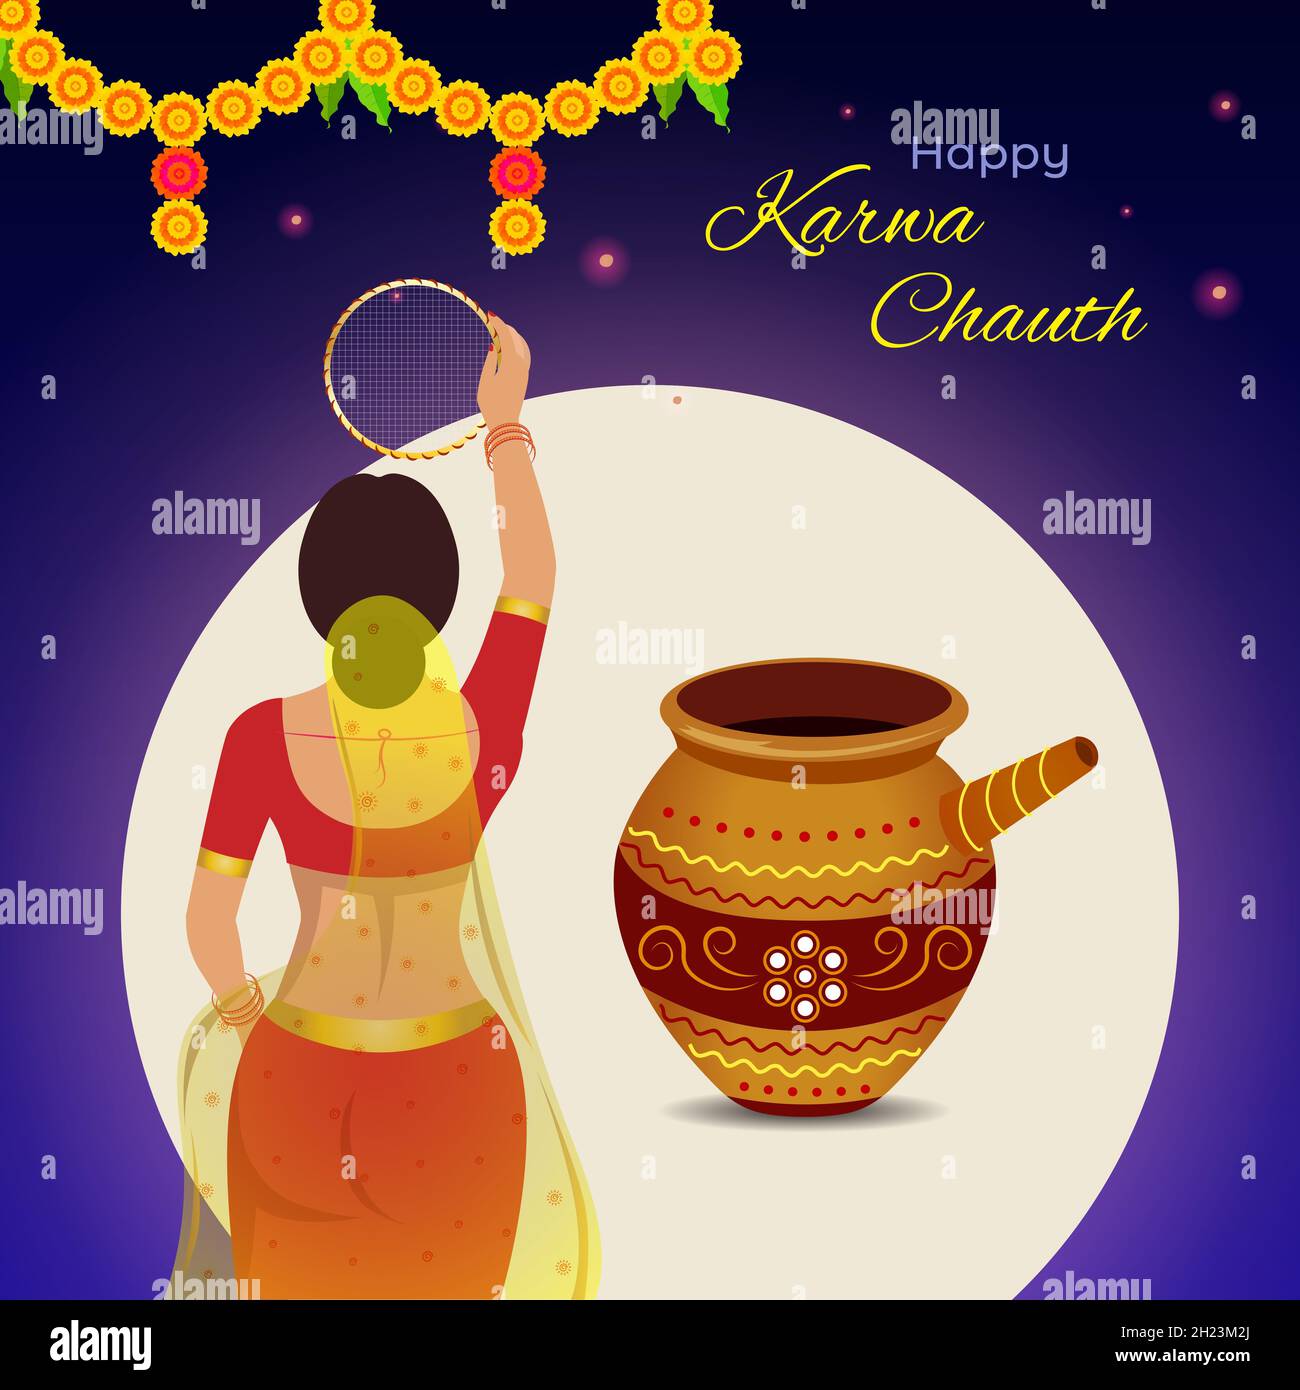 Fröhliche Karwa Chauth Festivalgrafik. Kreatives Design einer indischen Frau, die während Karwa Chauth durch das Sieb schaut, um das Fasten zu brechen. Stock Vektor